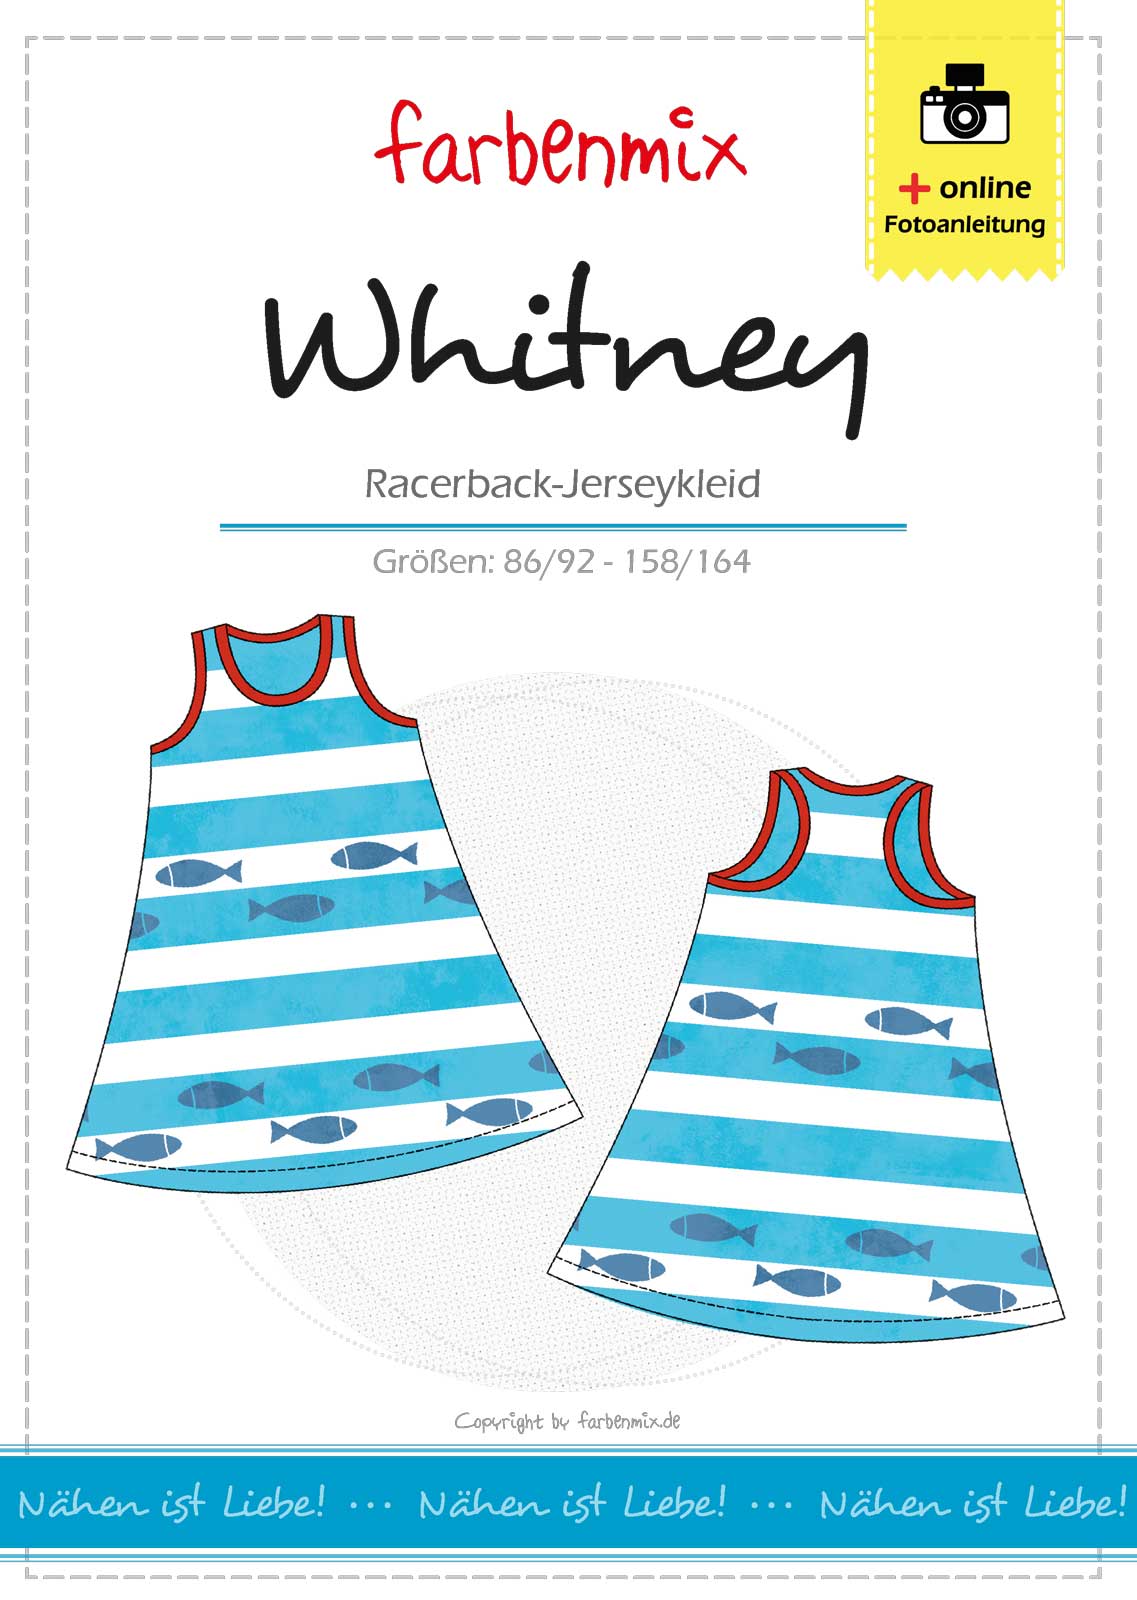 Schnittmuster Jerseykleid Whitney - Ebook/Papierschnitt farbenmix 